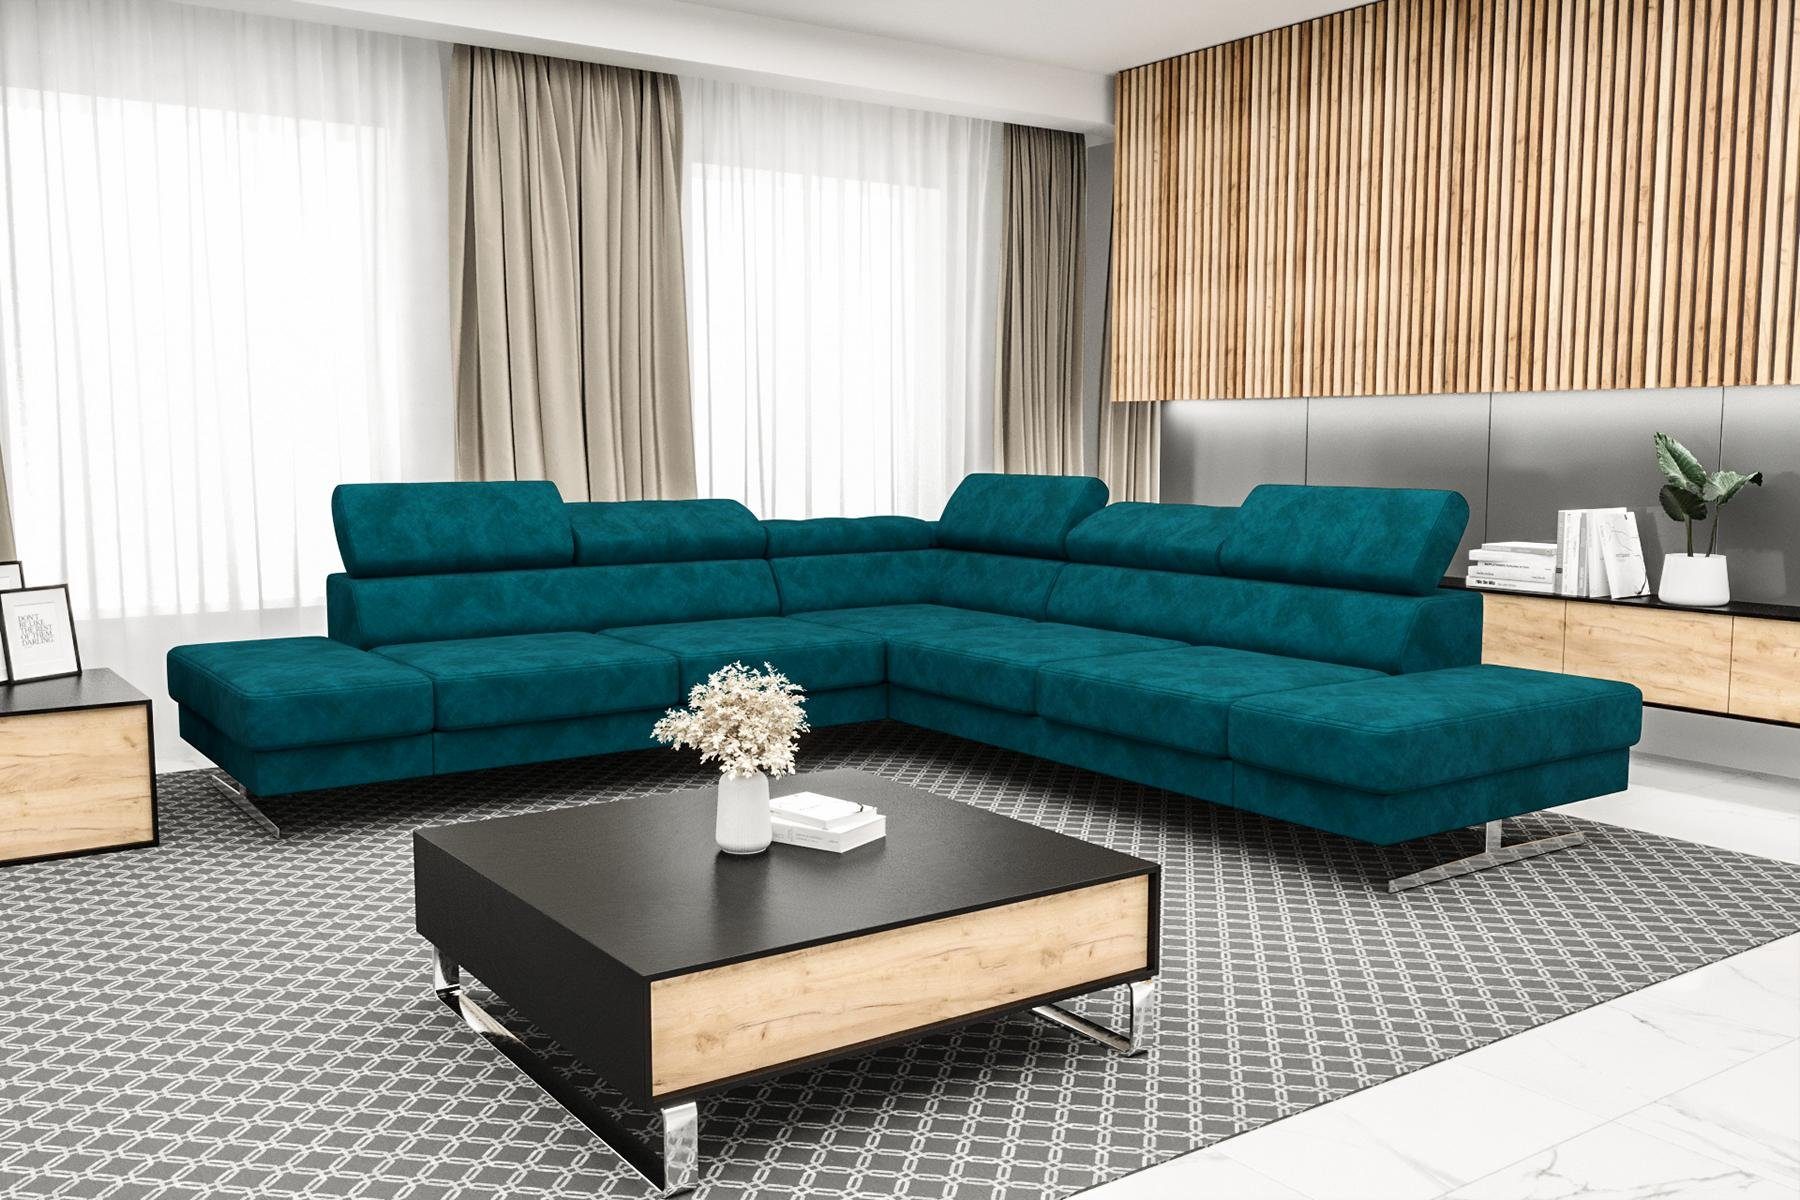 JVmoebel Ecksofa Designer Schwarzes L-Form Luxus Sofa Wohnzimmer Couch Textil, Made in Europe Blau | Ecksofas